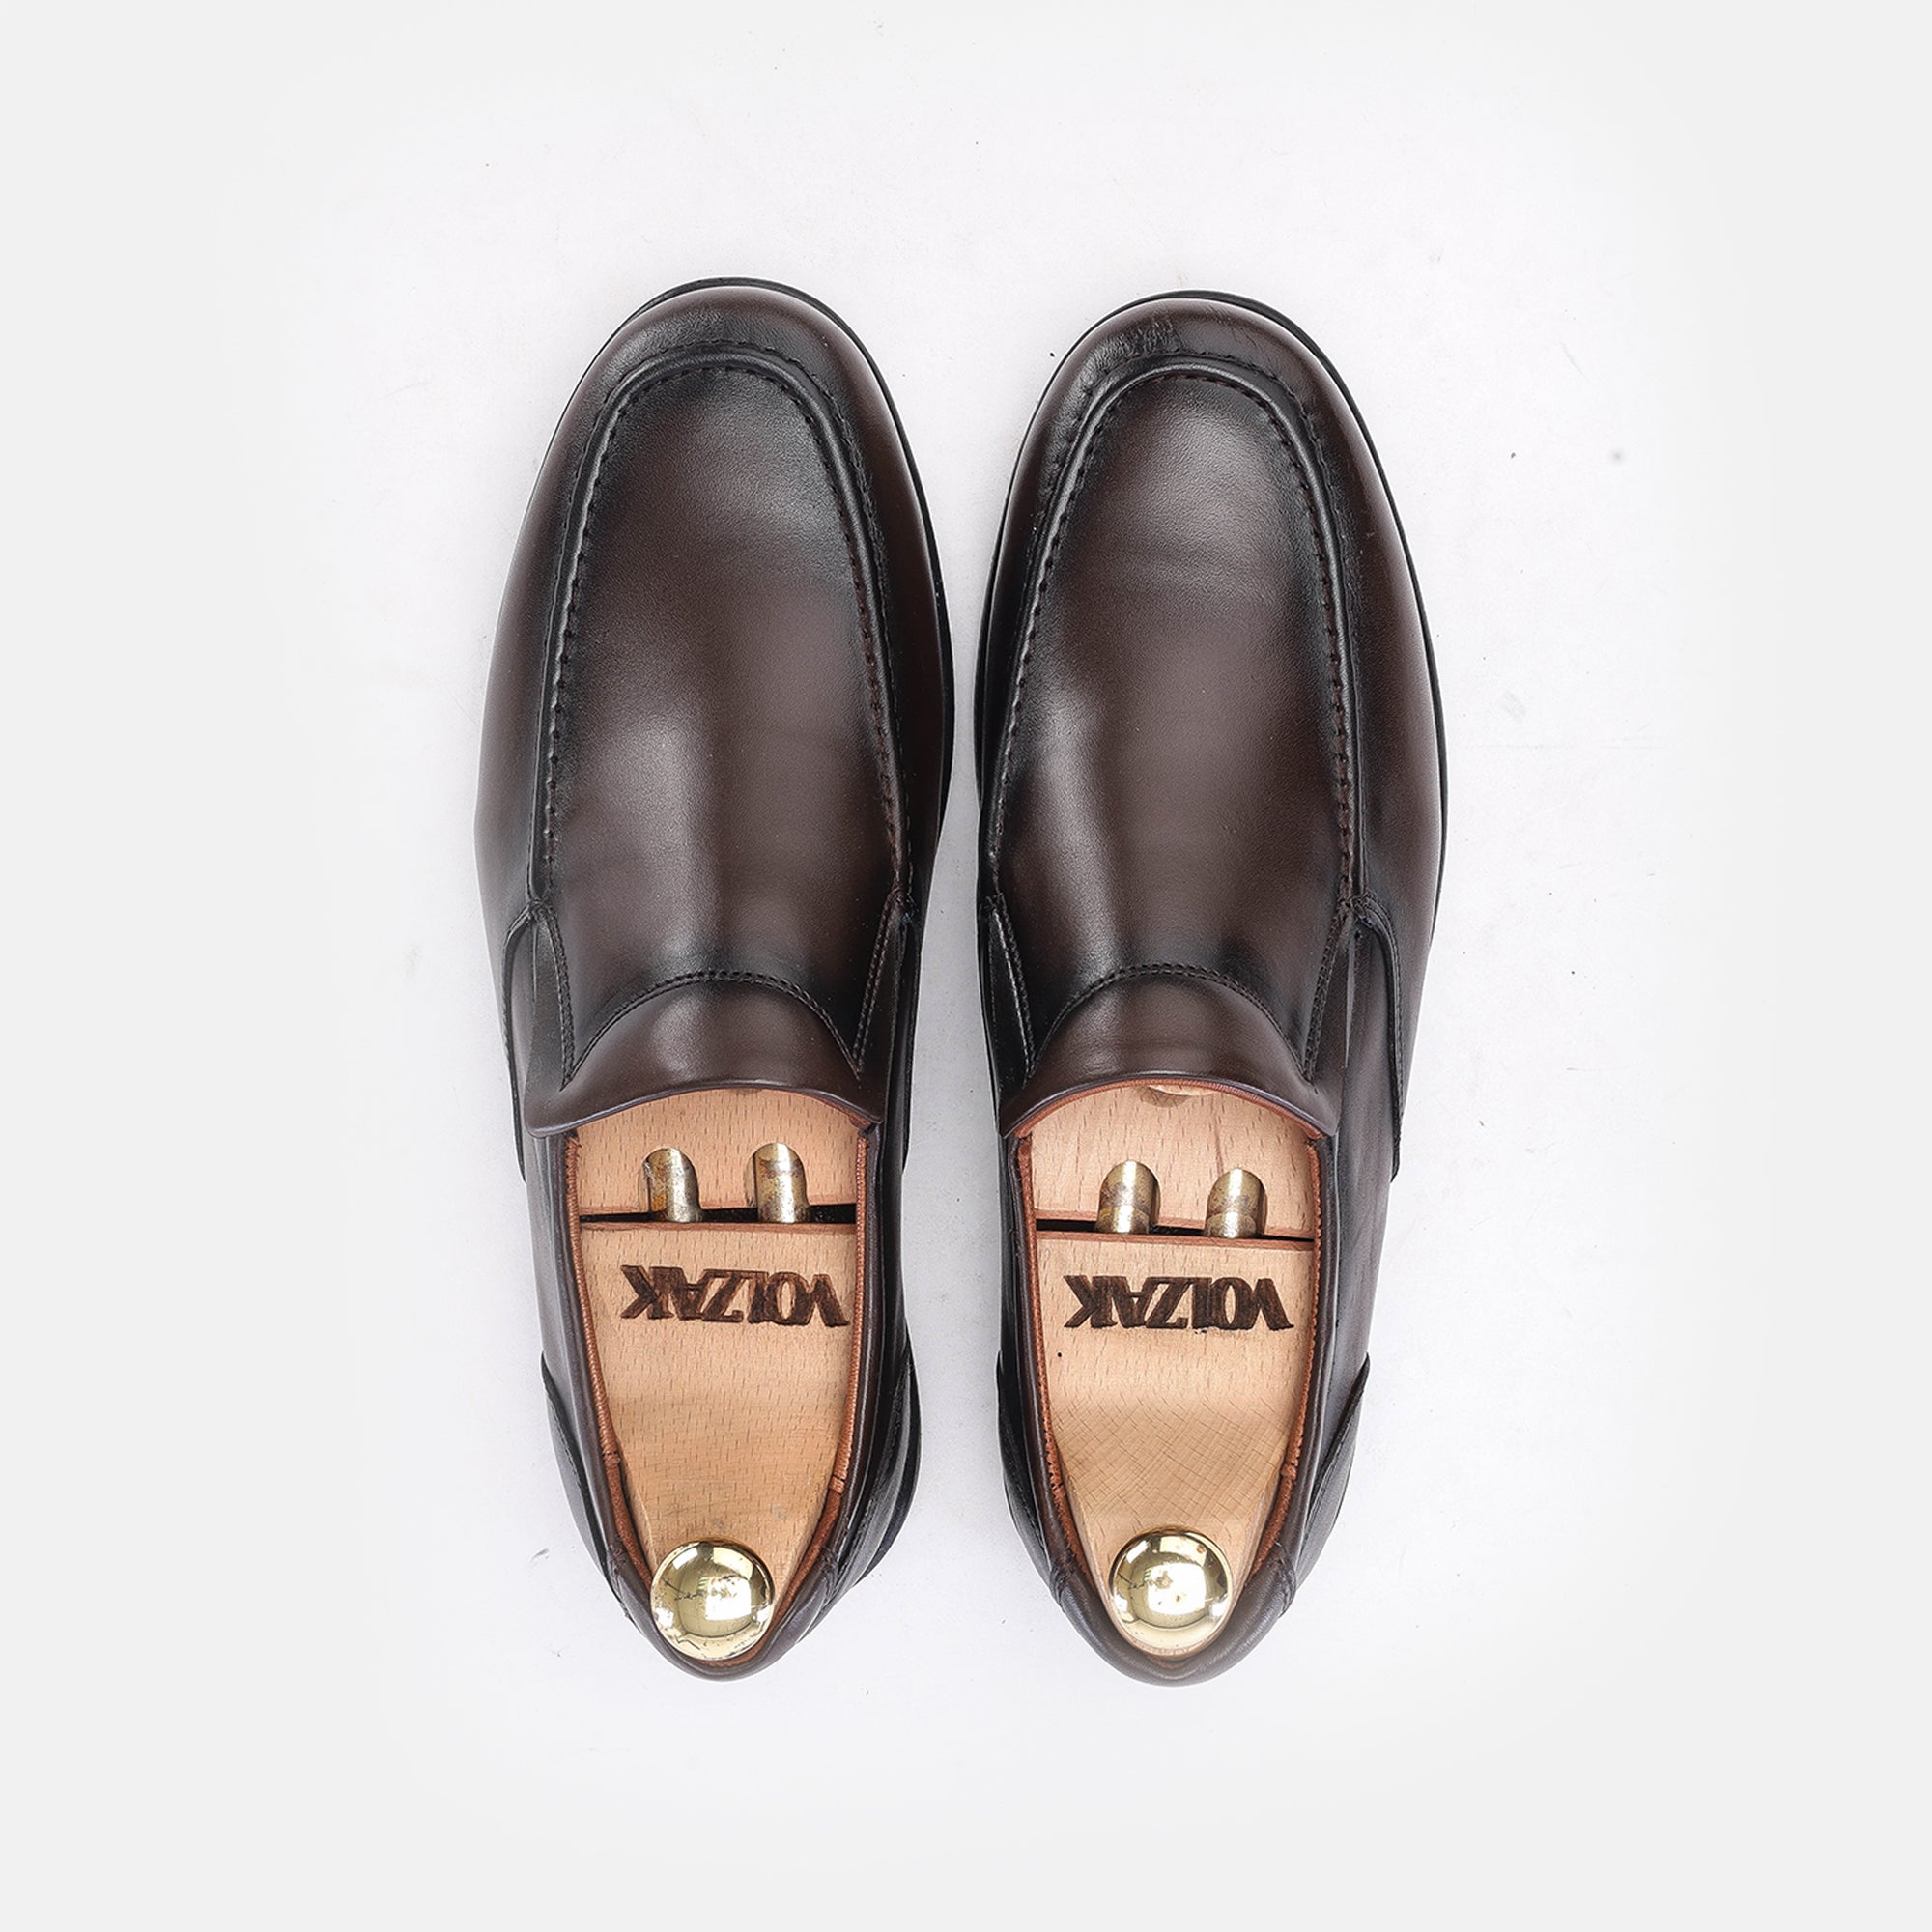 '5163 chaussure cuir marron